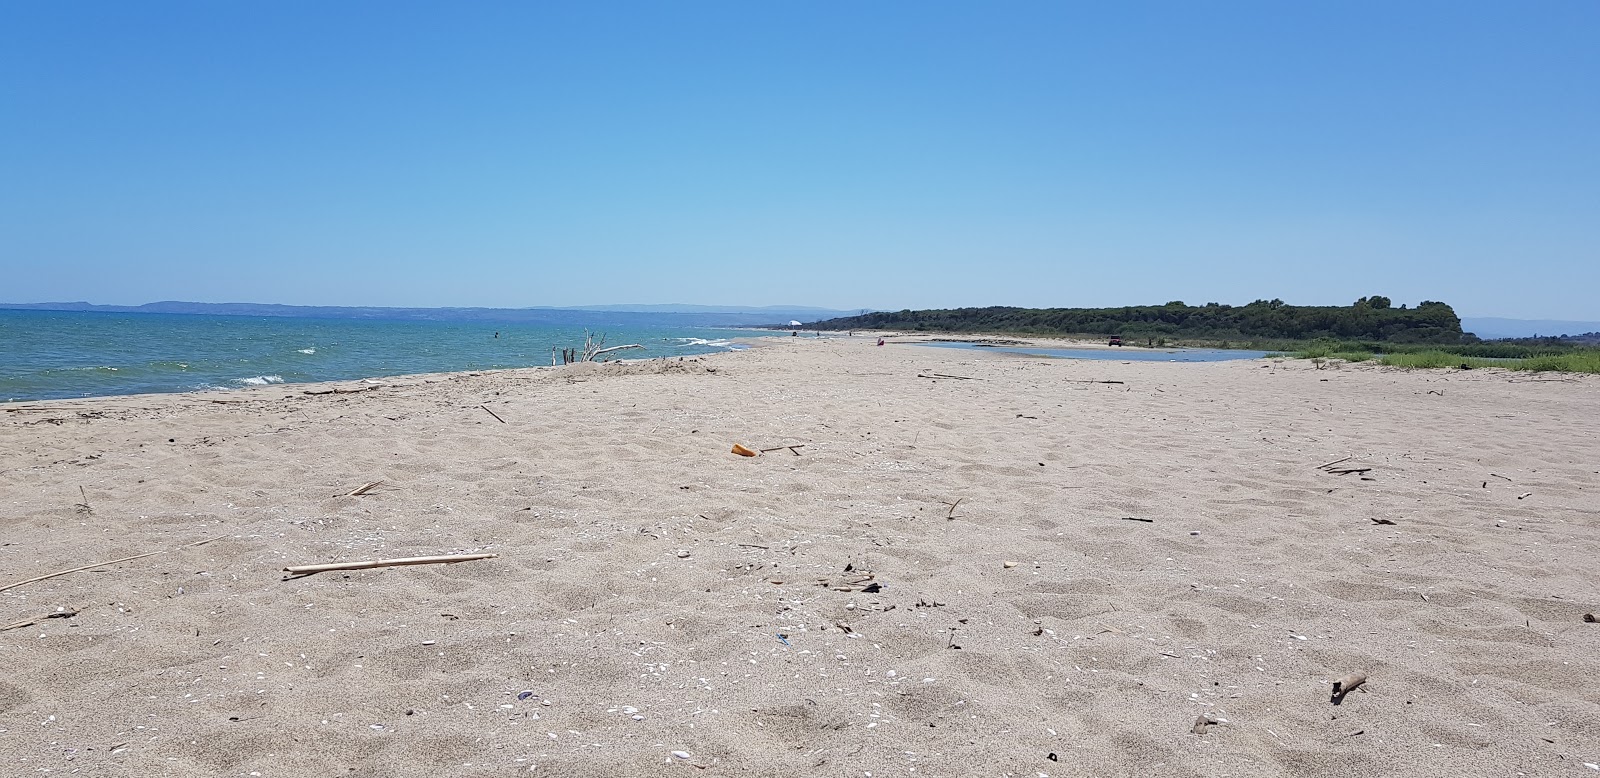 Fotografie cu Primosole beach cu o suprafață de nisip maro